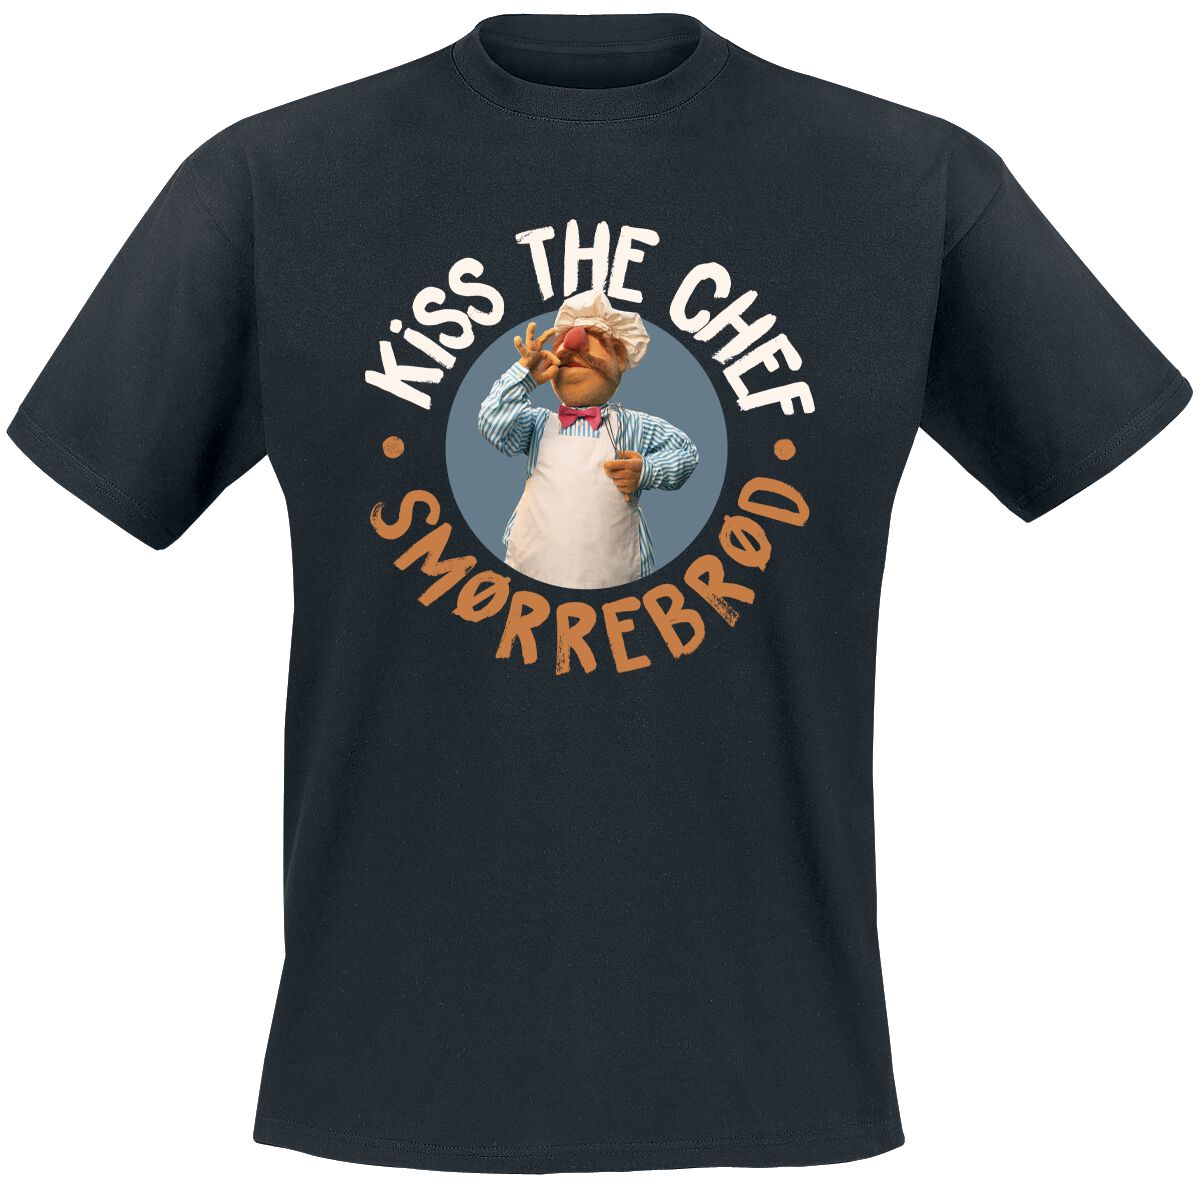 Die Muppets T-Shirt - Kiss The Chef - Smorrebrod - M bis 5XL - für Männer - Größe XL - schwarz  - Lizenzierter Fanartikel